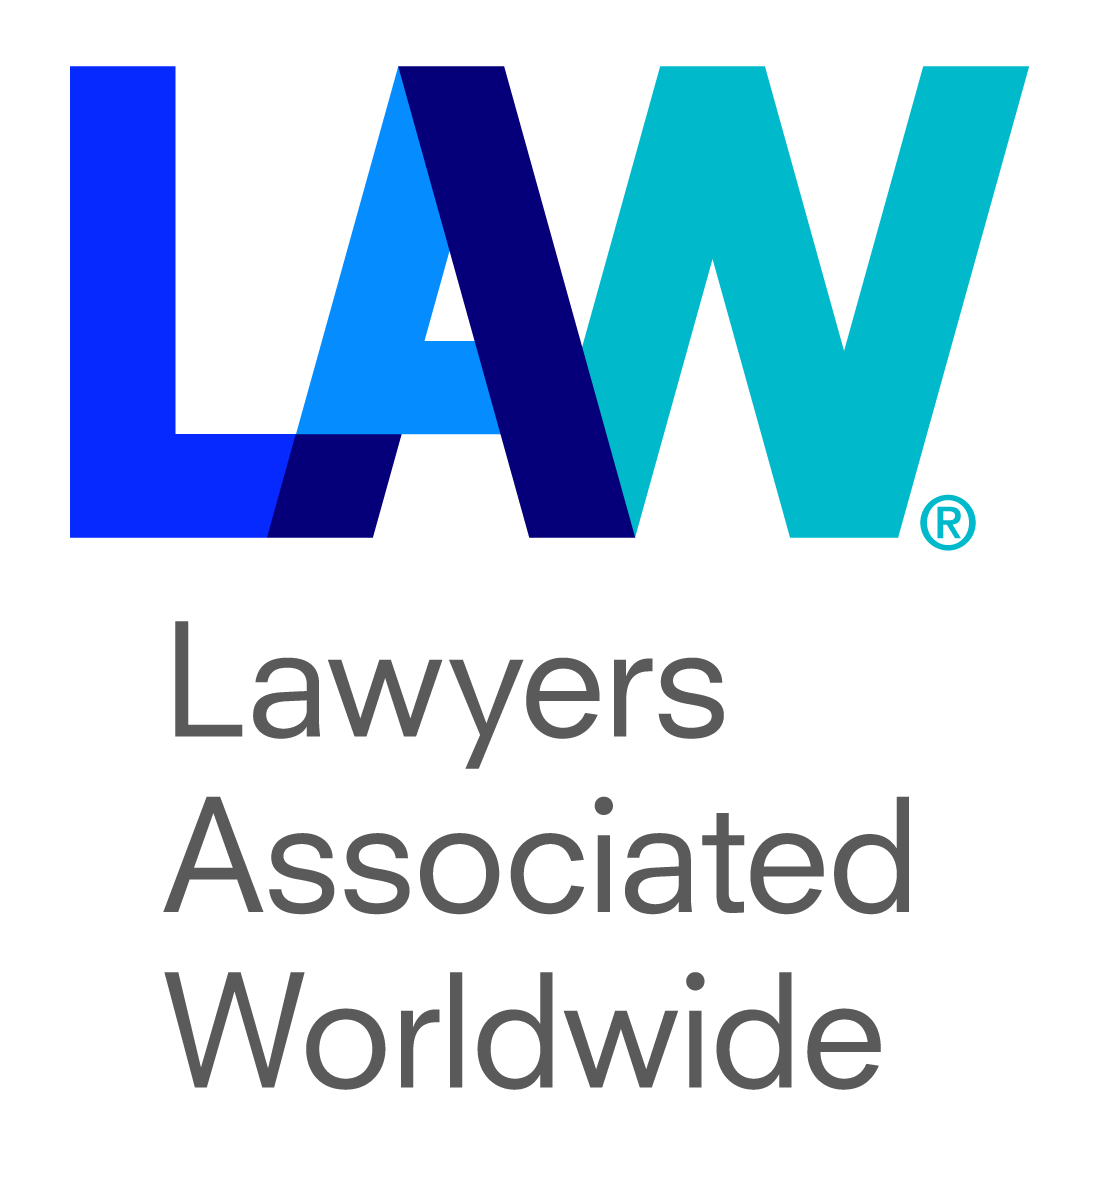 Lawyers associated worldwide